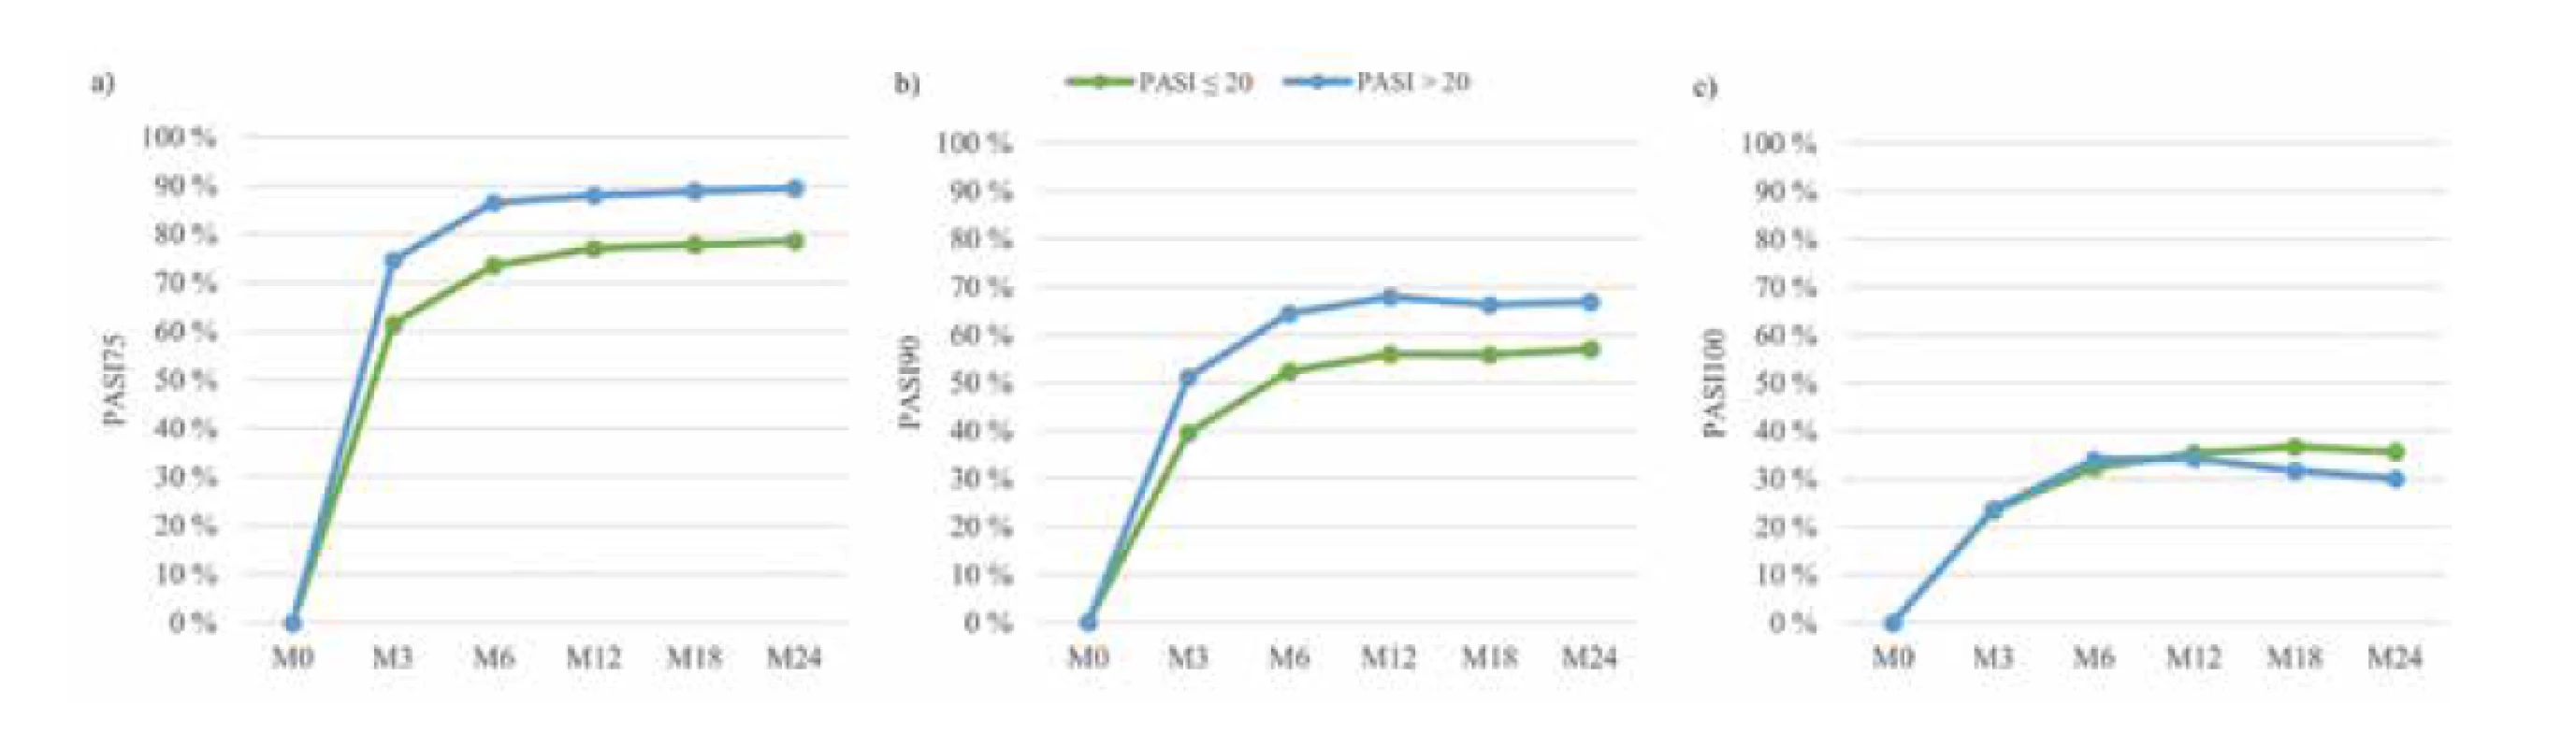 PASI 75 (a), PASI 90 (b) a PASI 100 (c) podle výchozí hodnoty PASI před léčbou